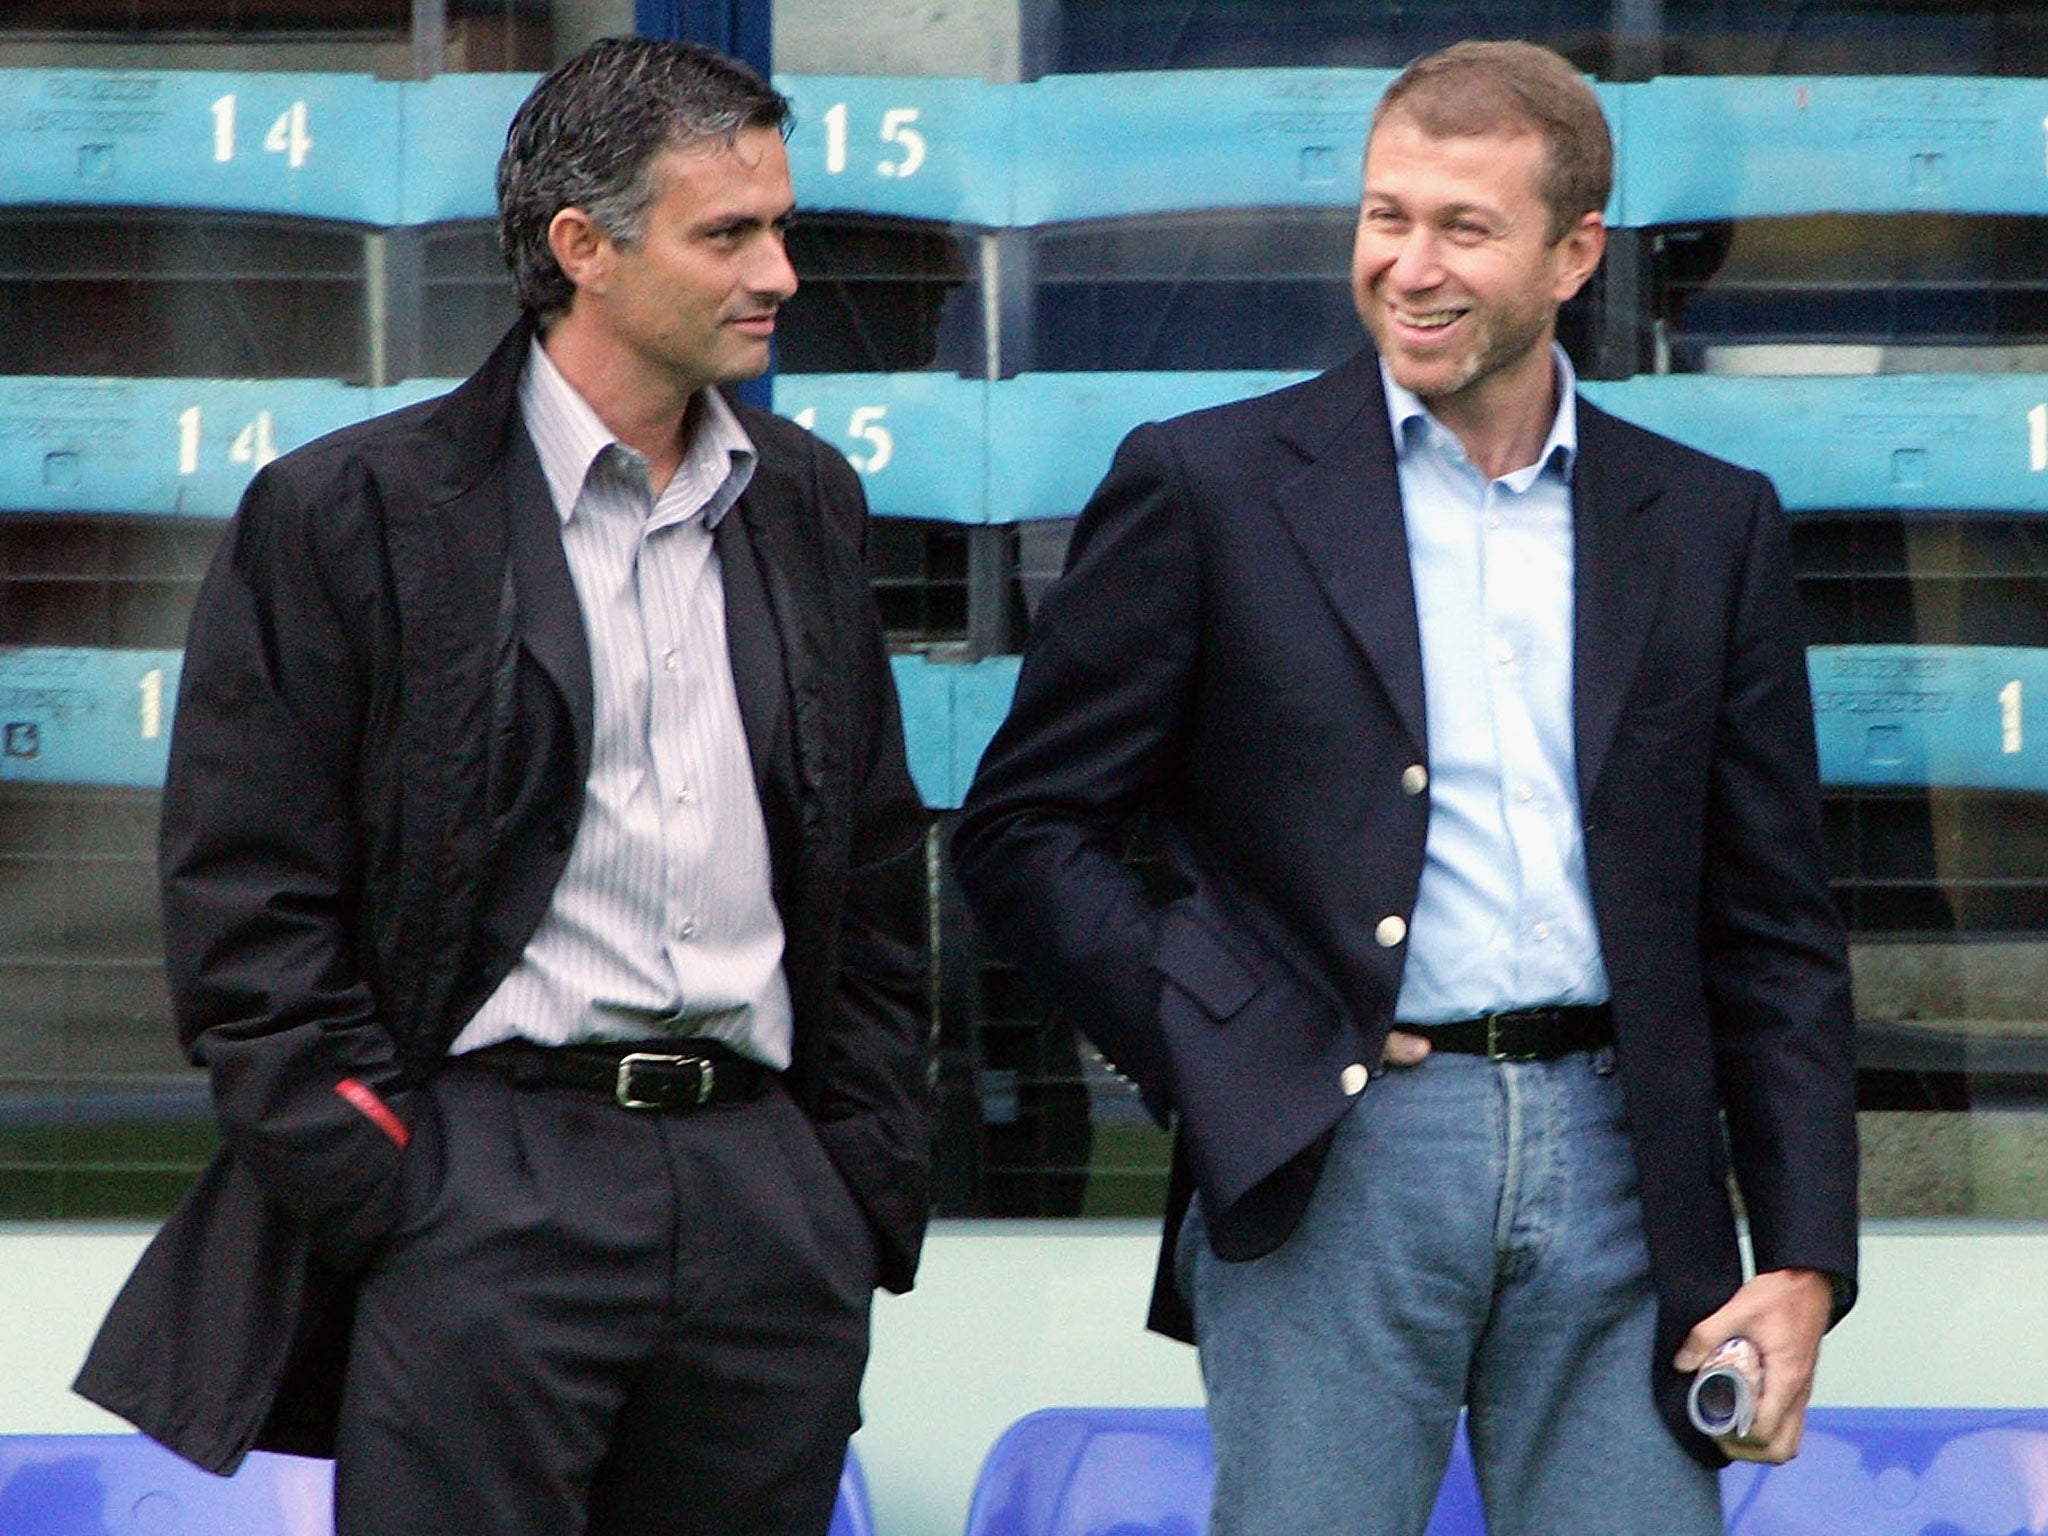 Jose Mourinho (left) and Roman Abramovich in 2004